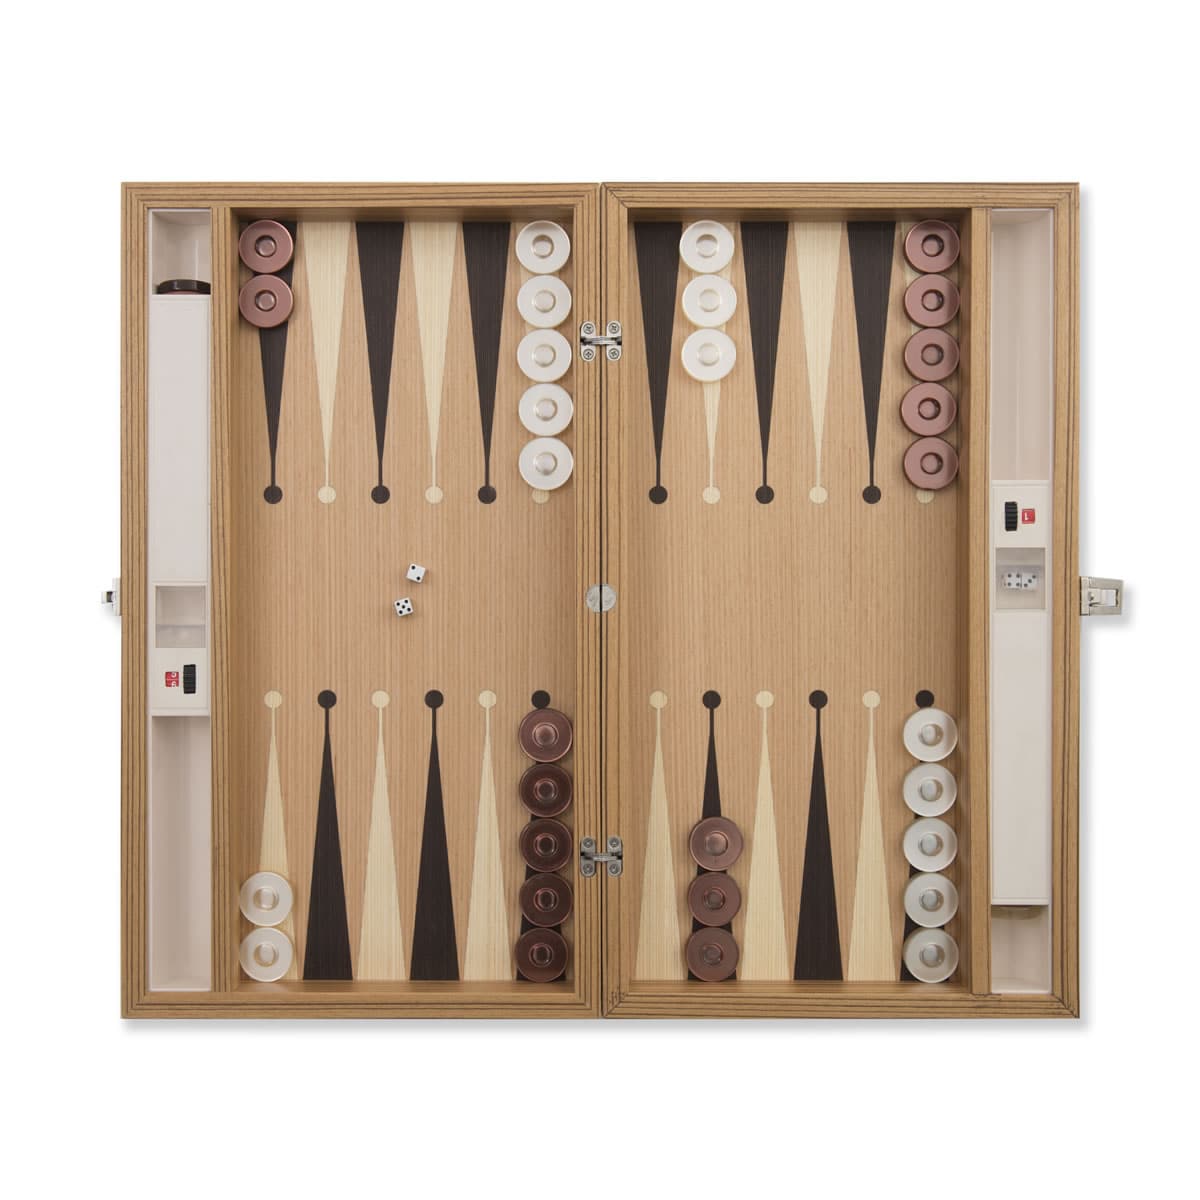 Turkish Wooden Backgammon Set